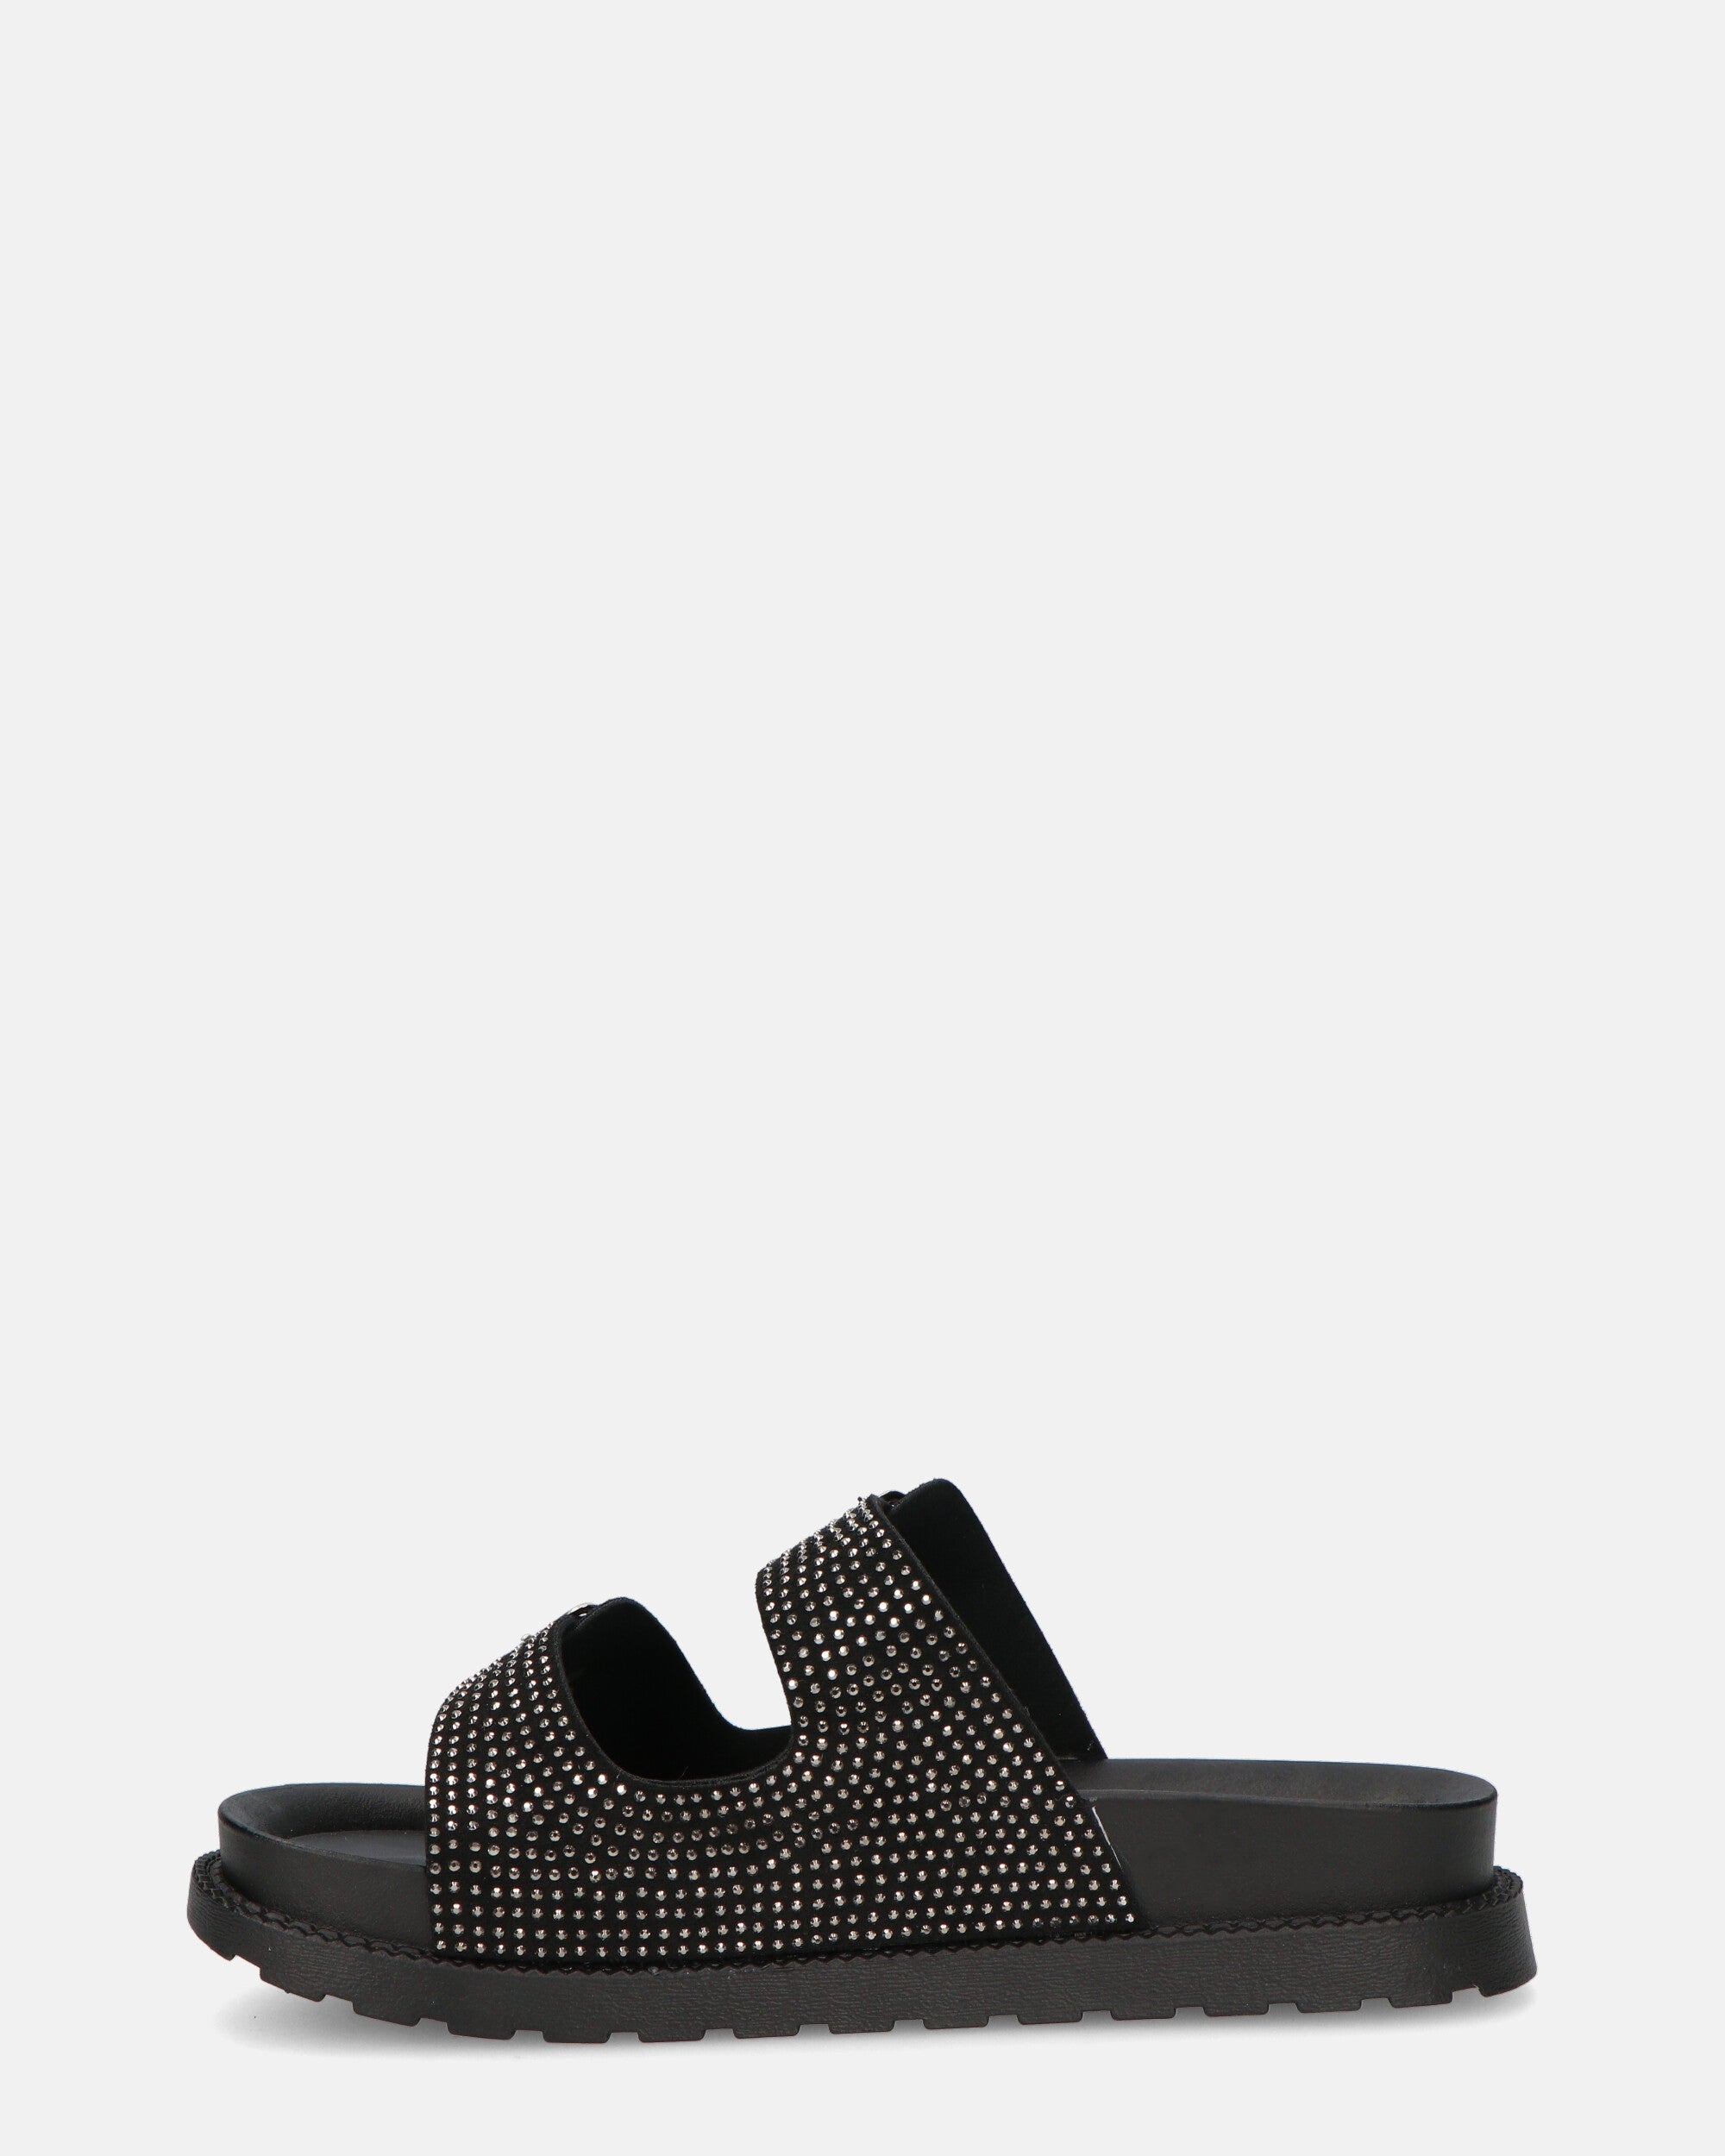 NORIKO - sandali neri con cinturini e borchie metalliche